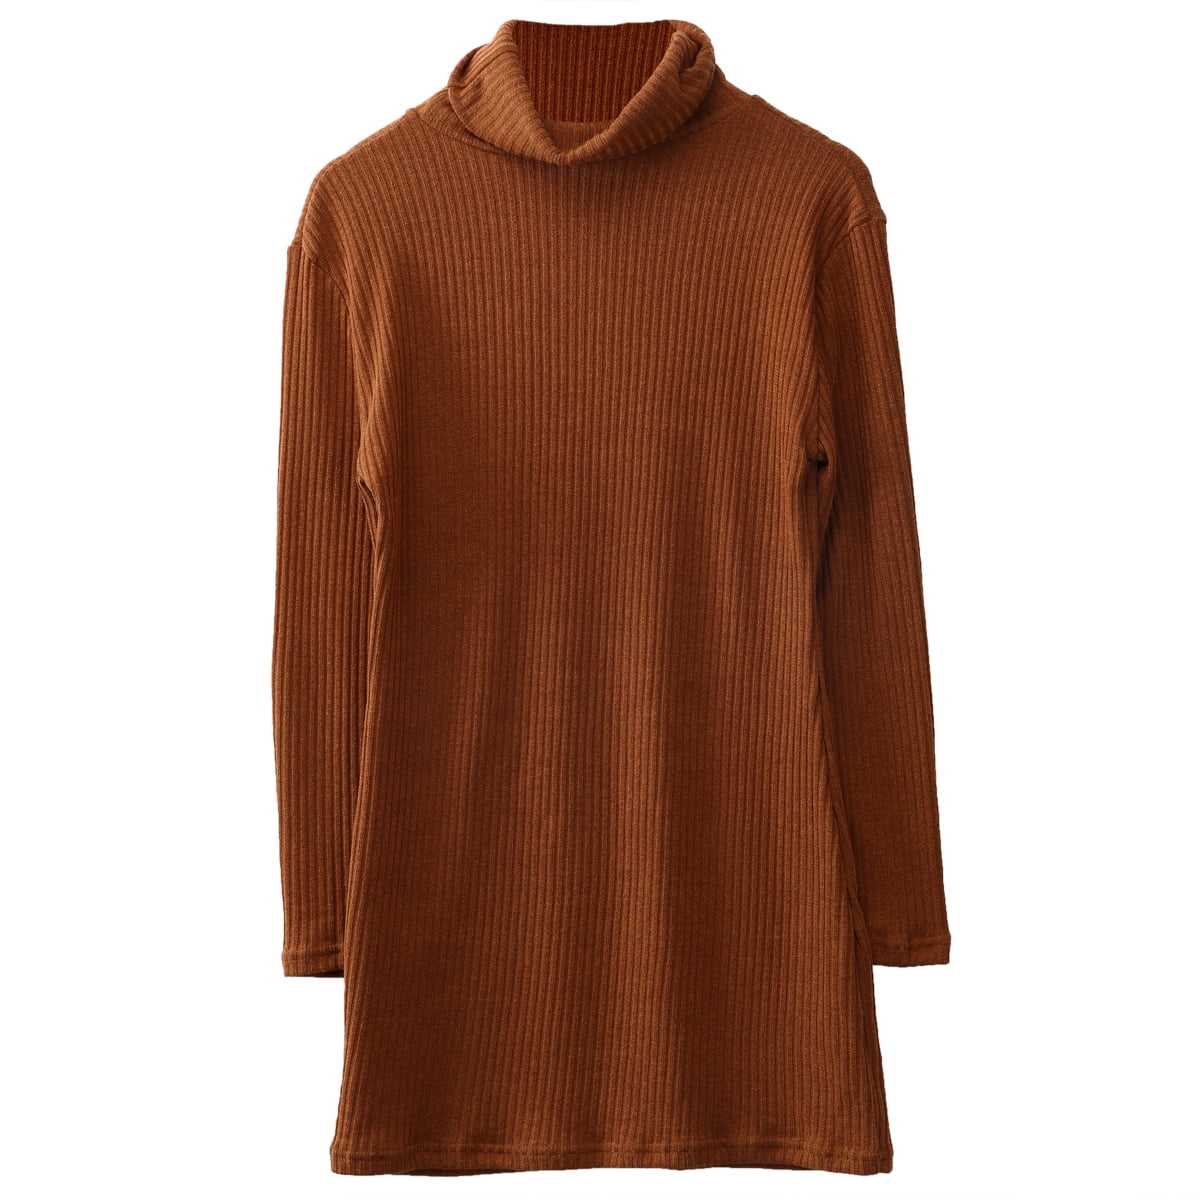 2019 Womens Cowl Neck Loose Long Sleeve Oversize Sweater Jumper Shirt Tops Dress